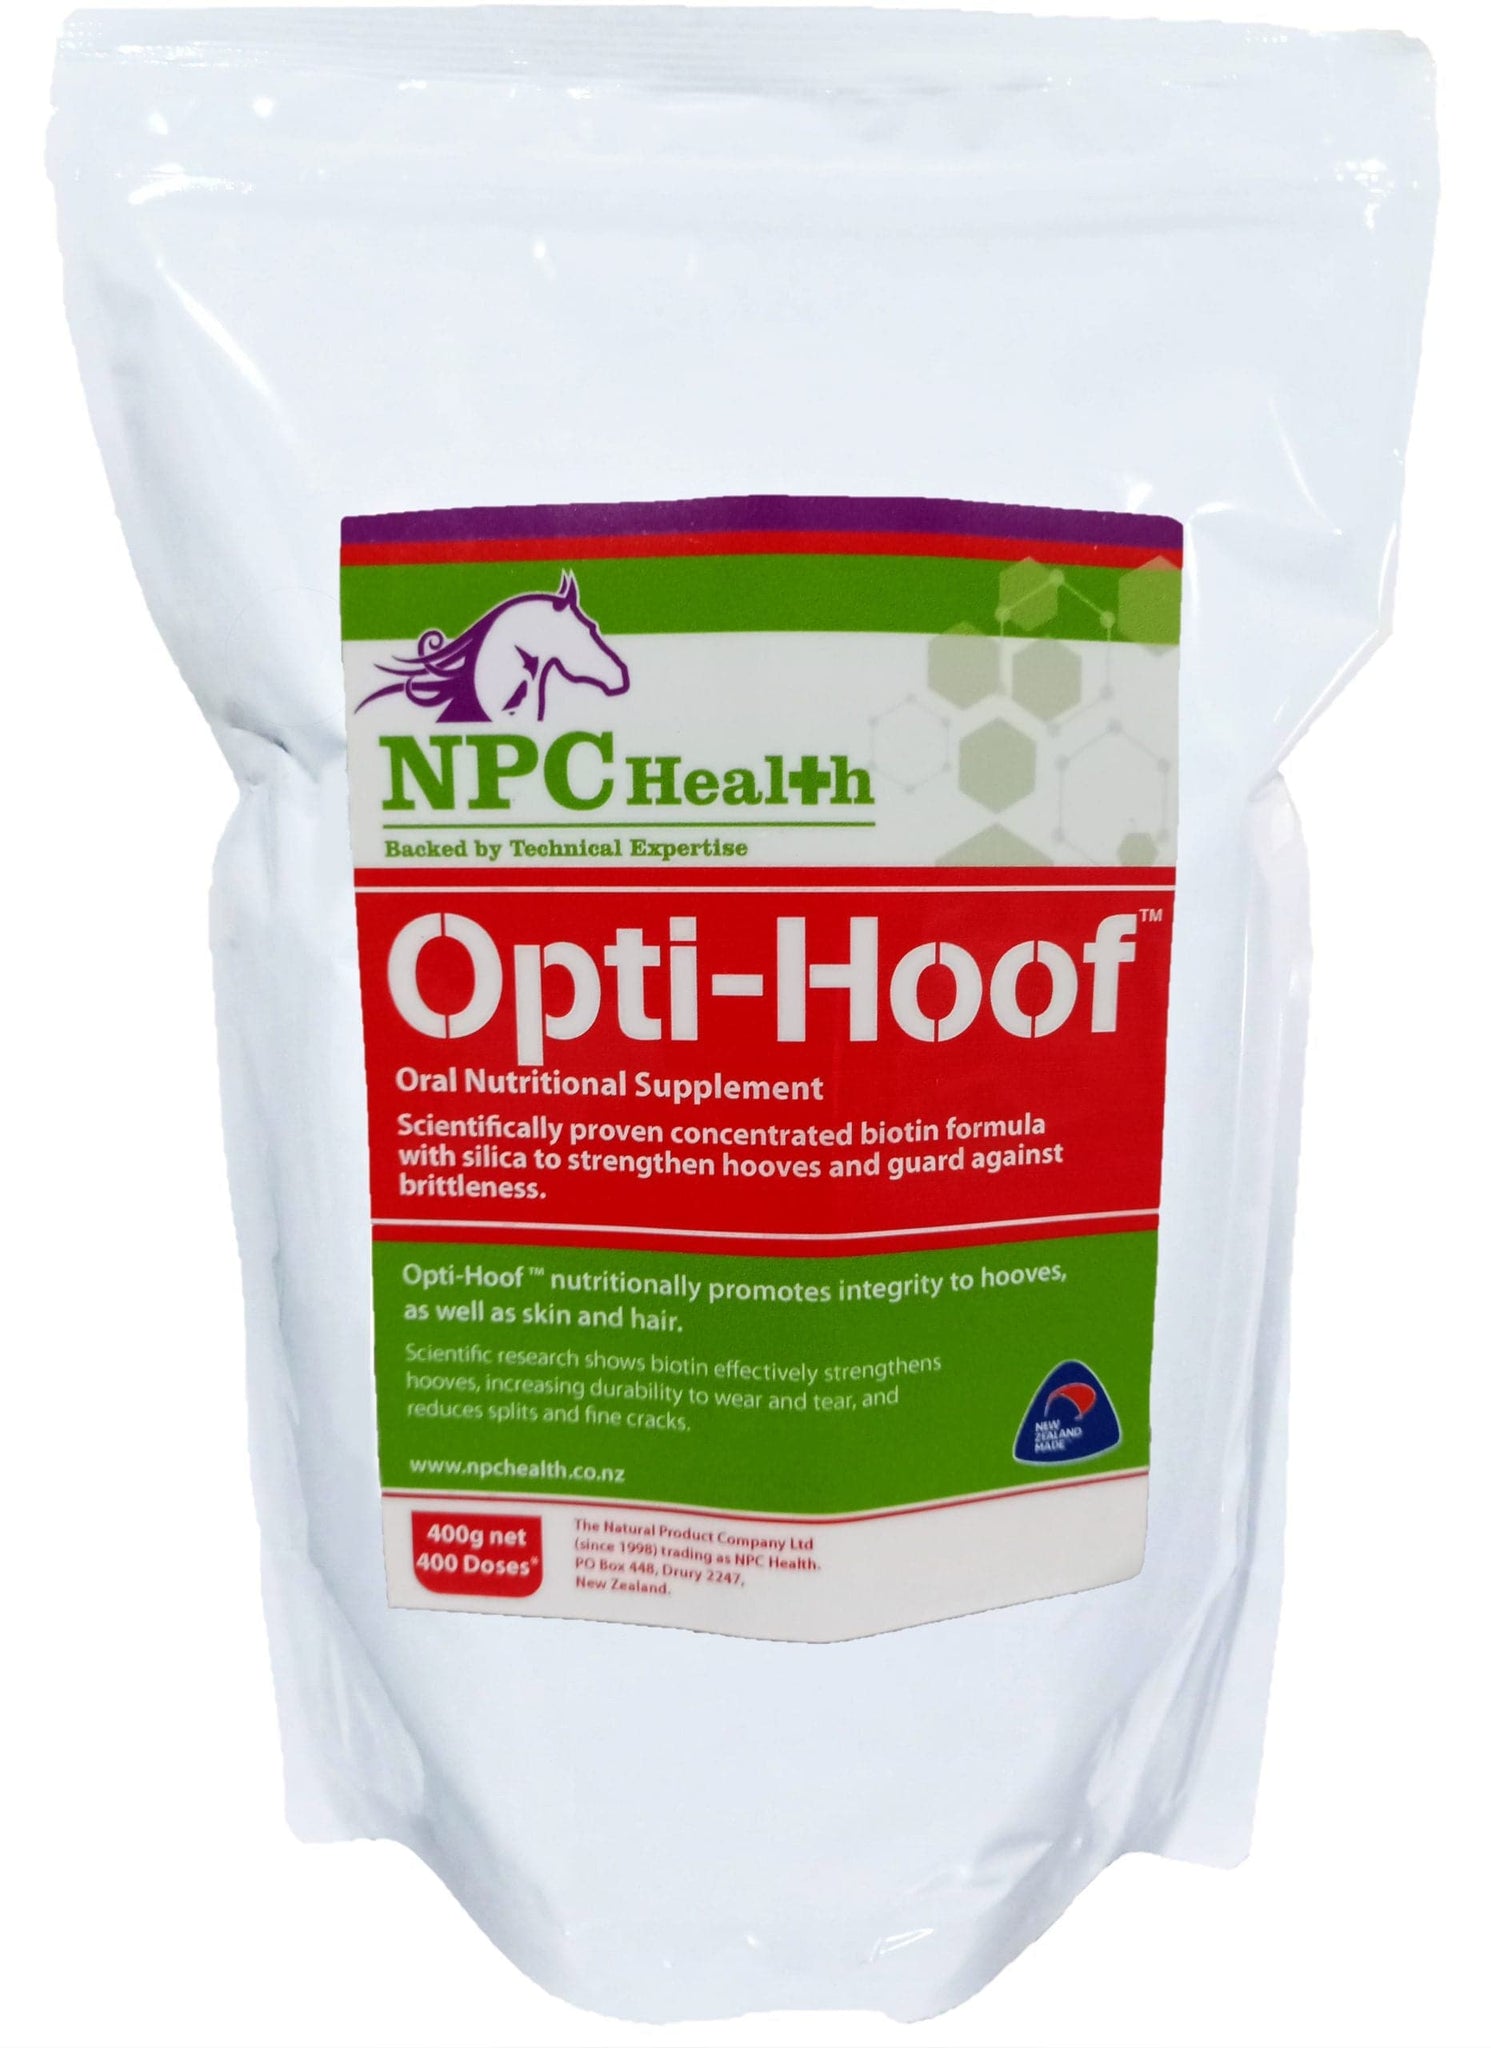 NPC Opti-Hoof